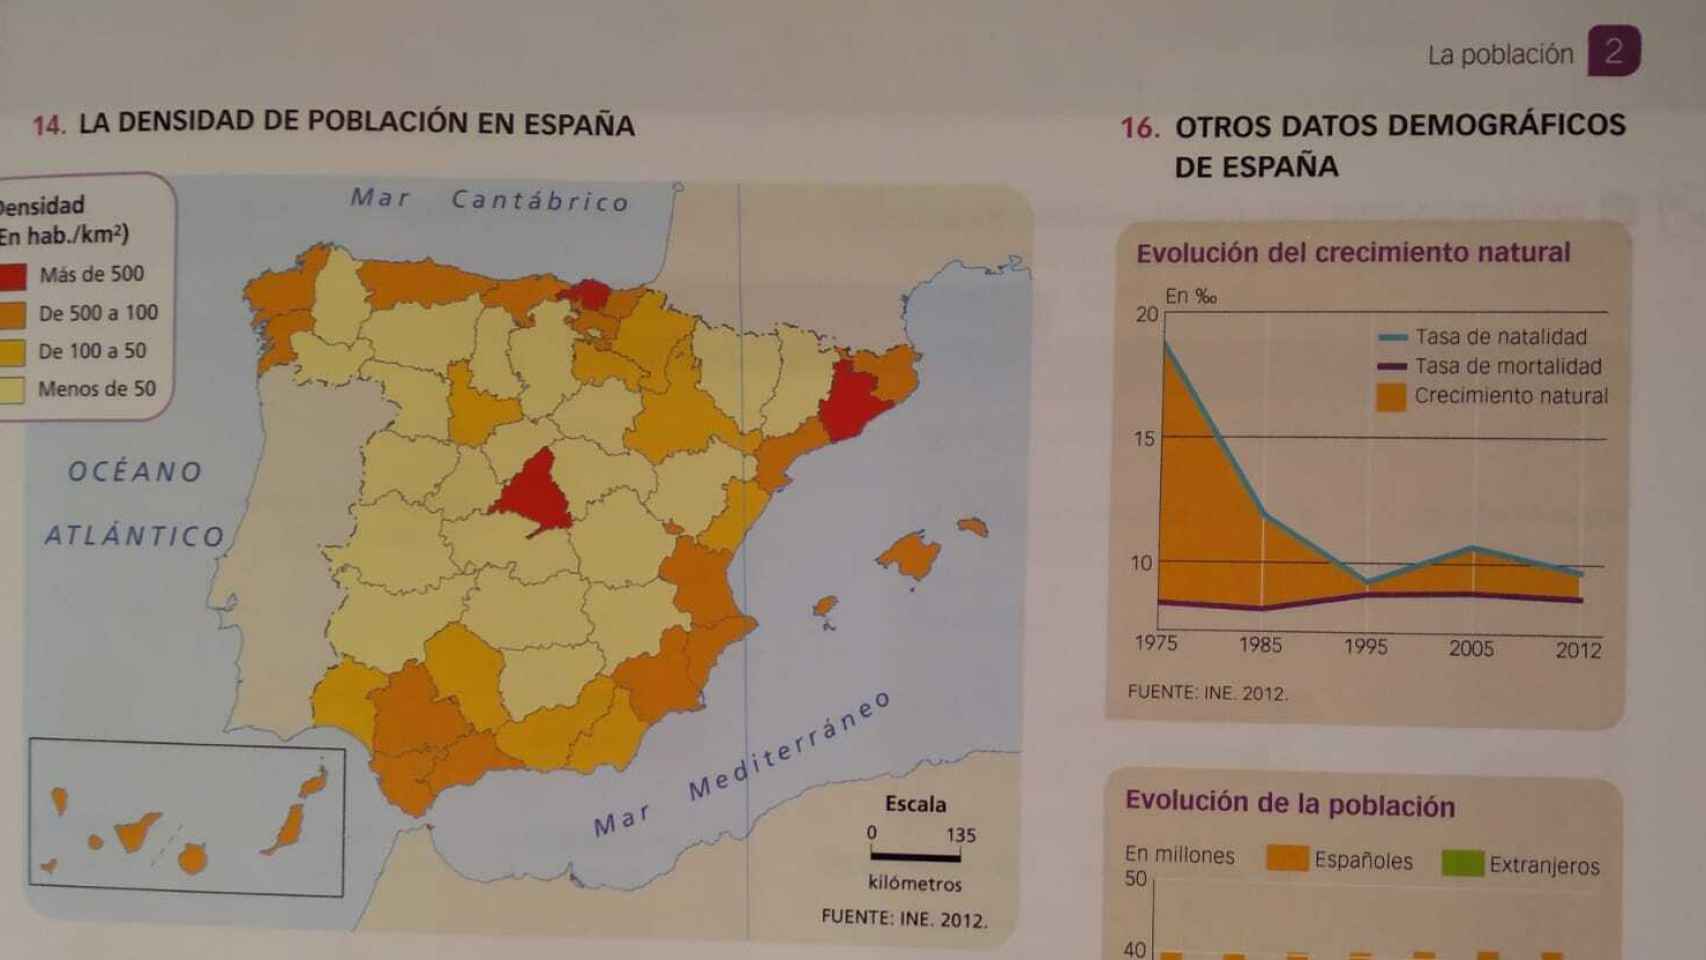 Mapa del libro de la princesa Leonor. El mapa de España, dividido en provincias y comunidades.